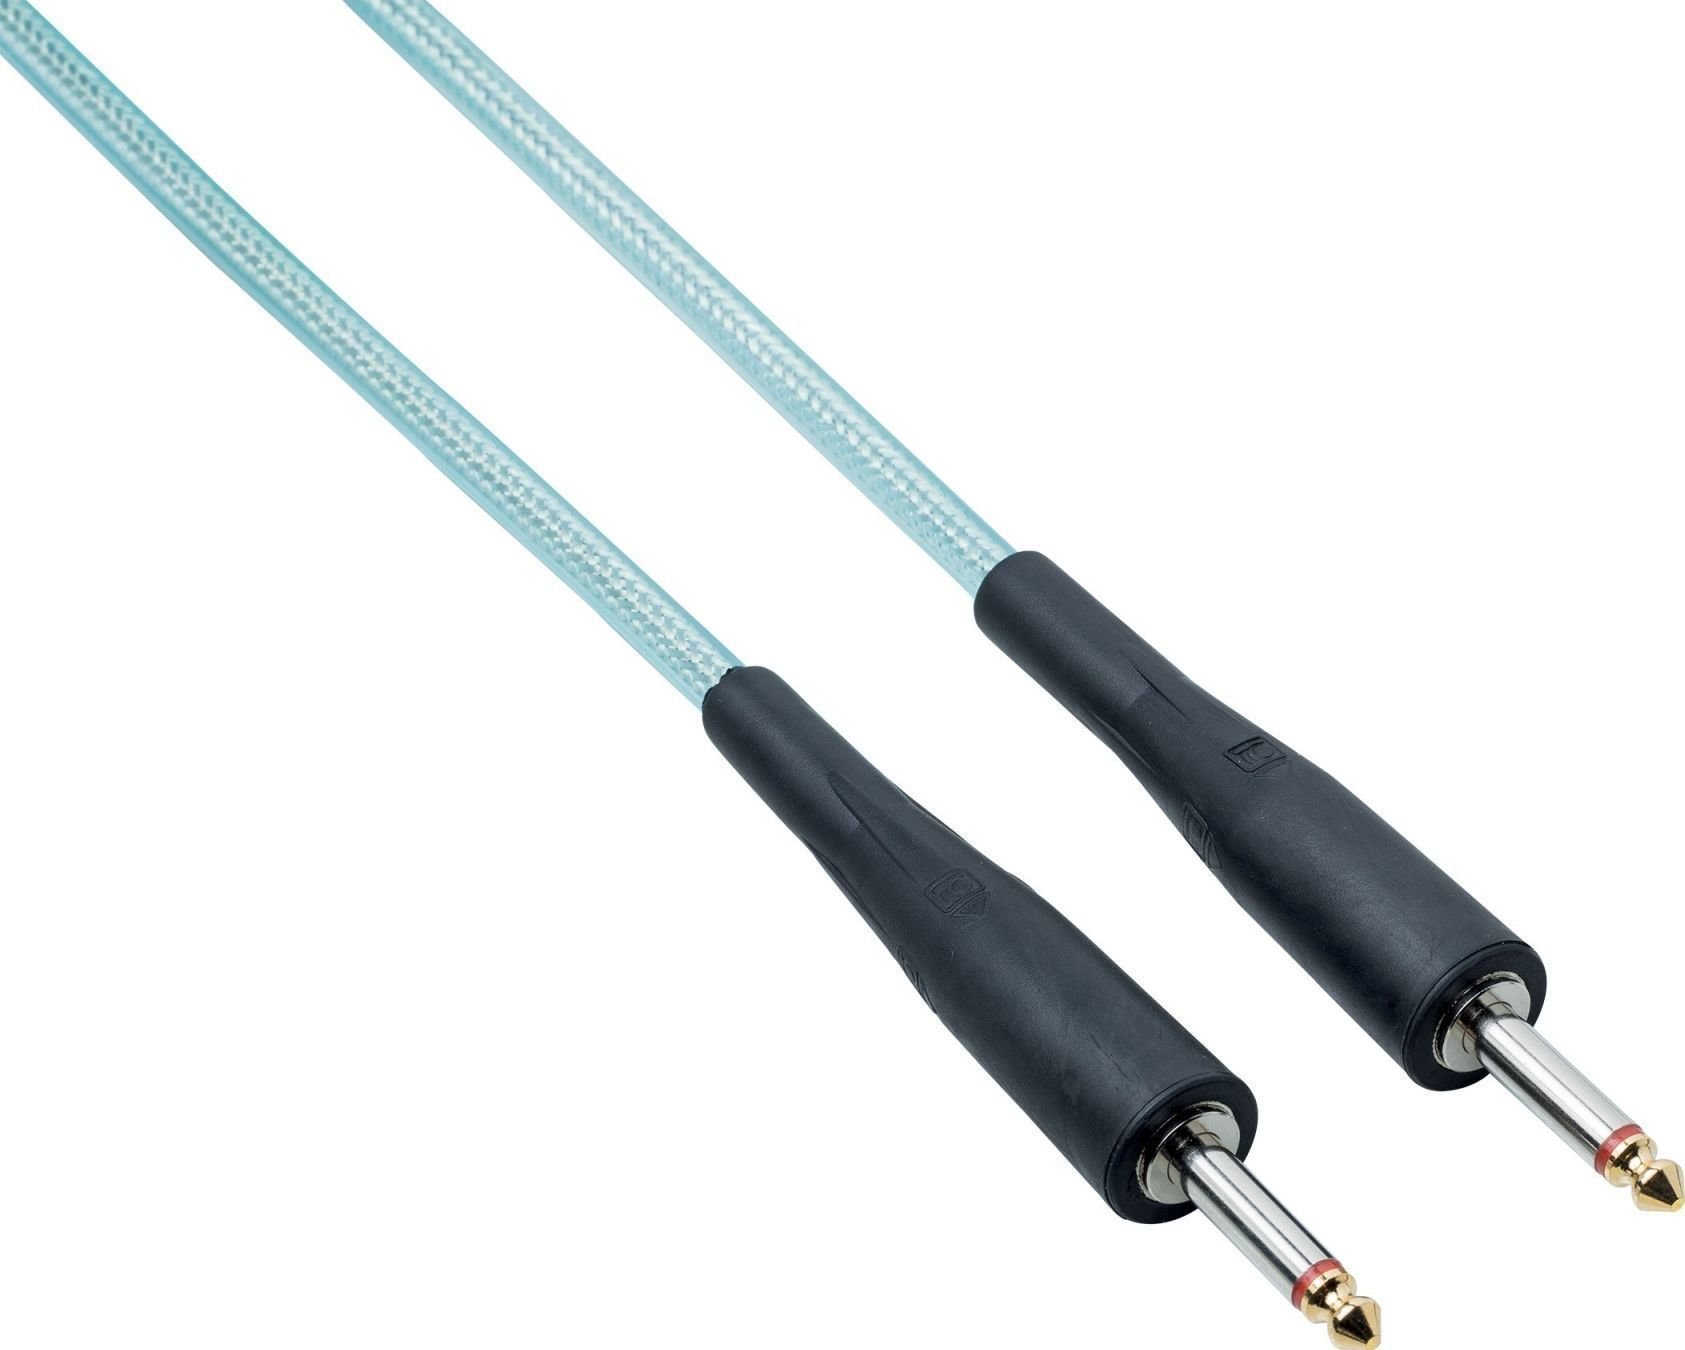 Instrument kabel Bespeco LZ300 Blå 3 m Lige - Lige